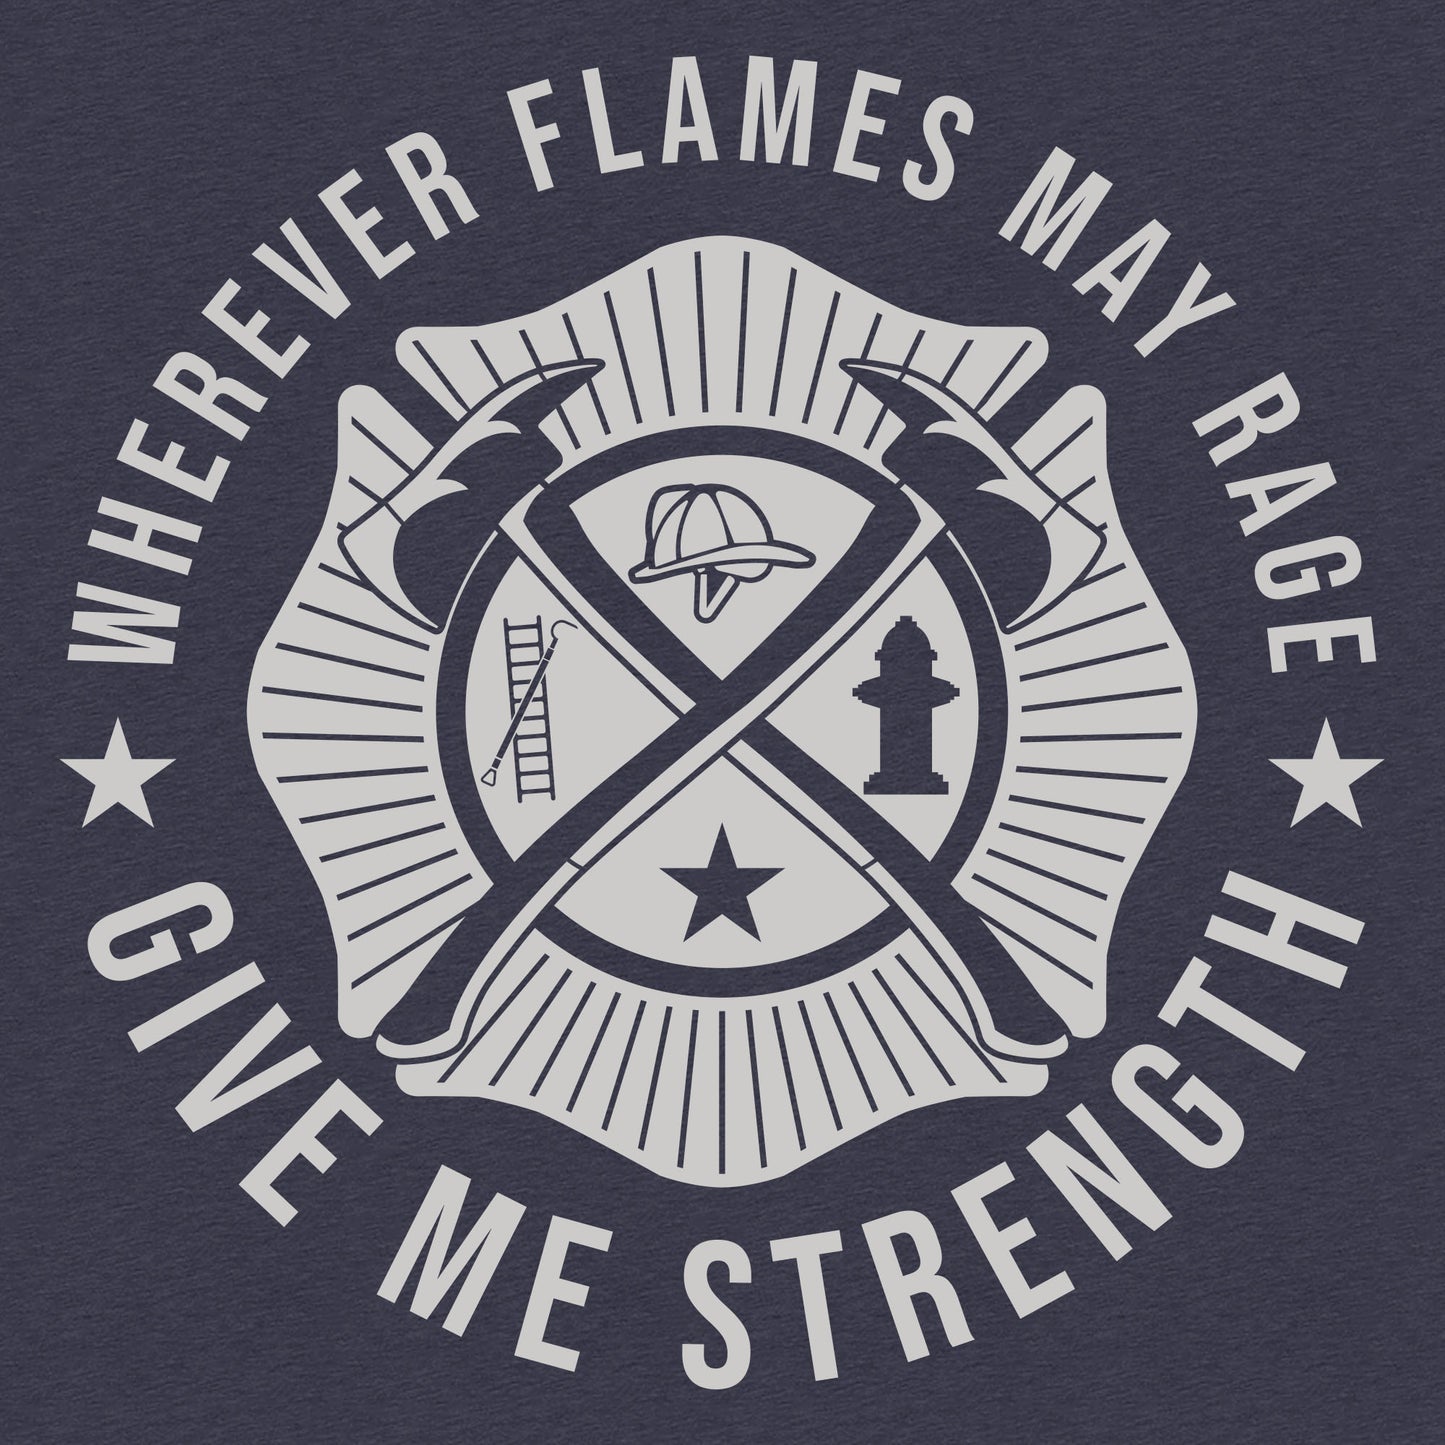 Wherever Flames May Range - Firefighter Shirt 